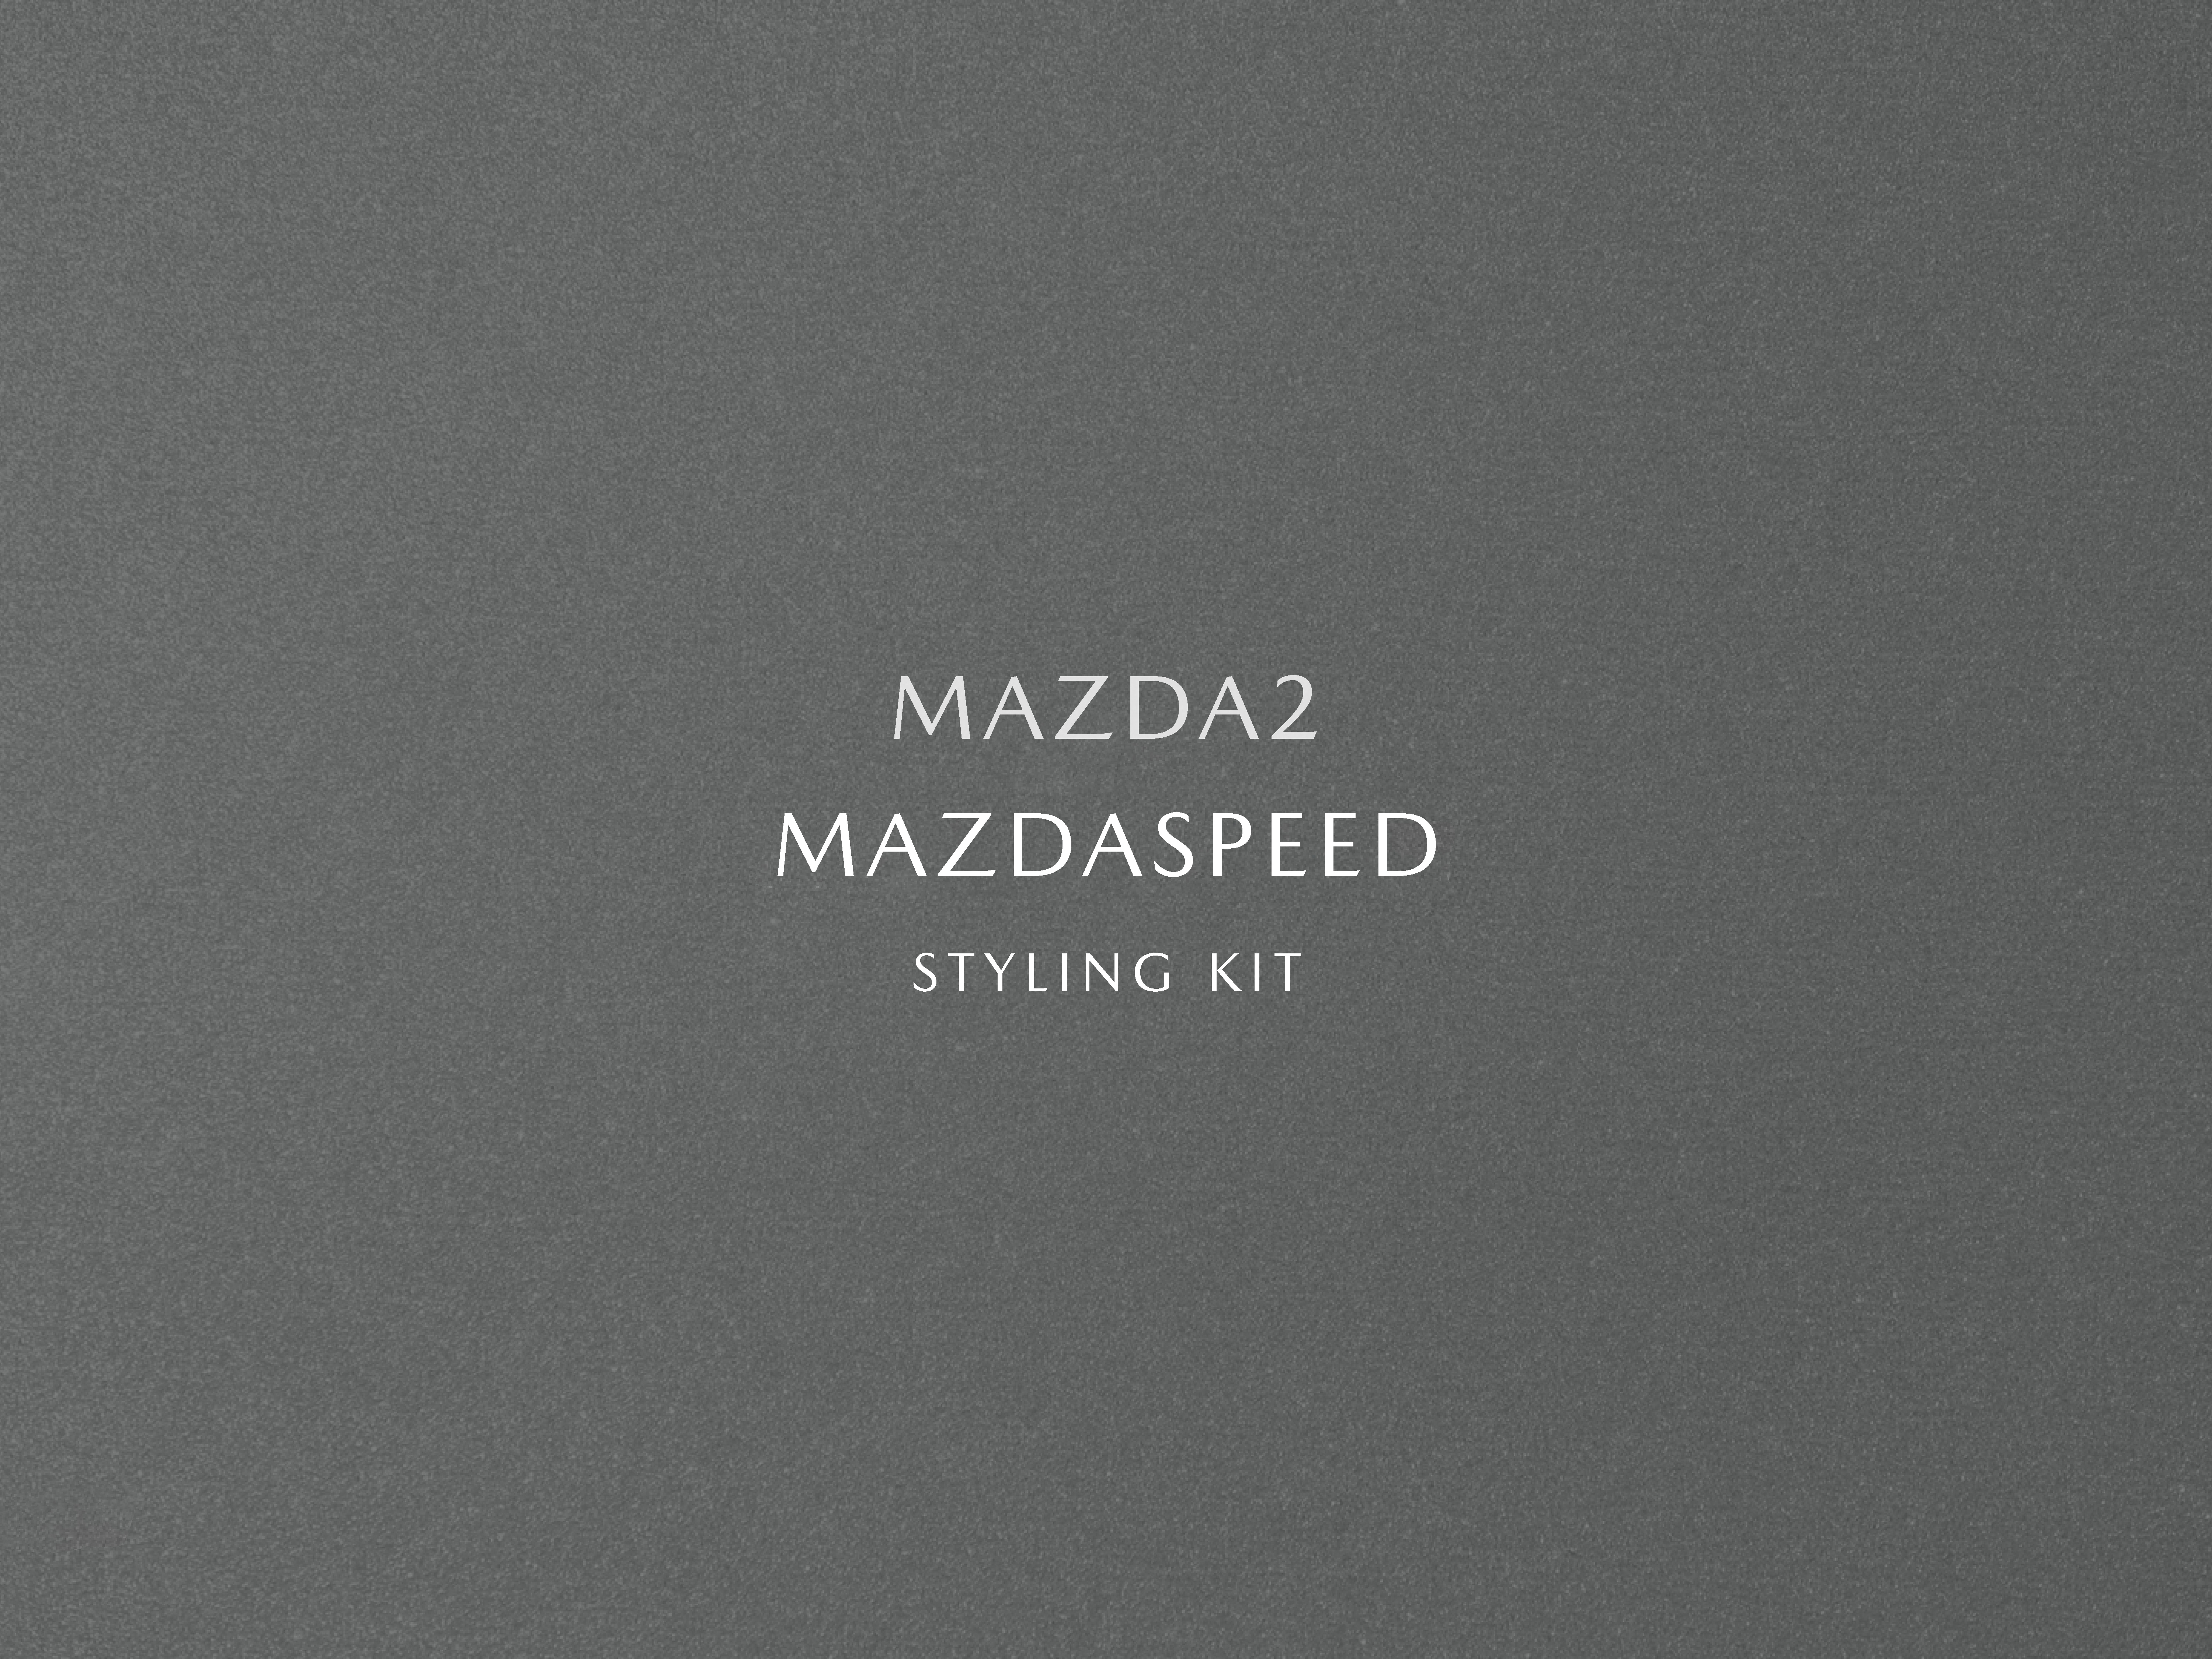 MAZDA 2 MAZDASPEED STYLING KIT